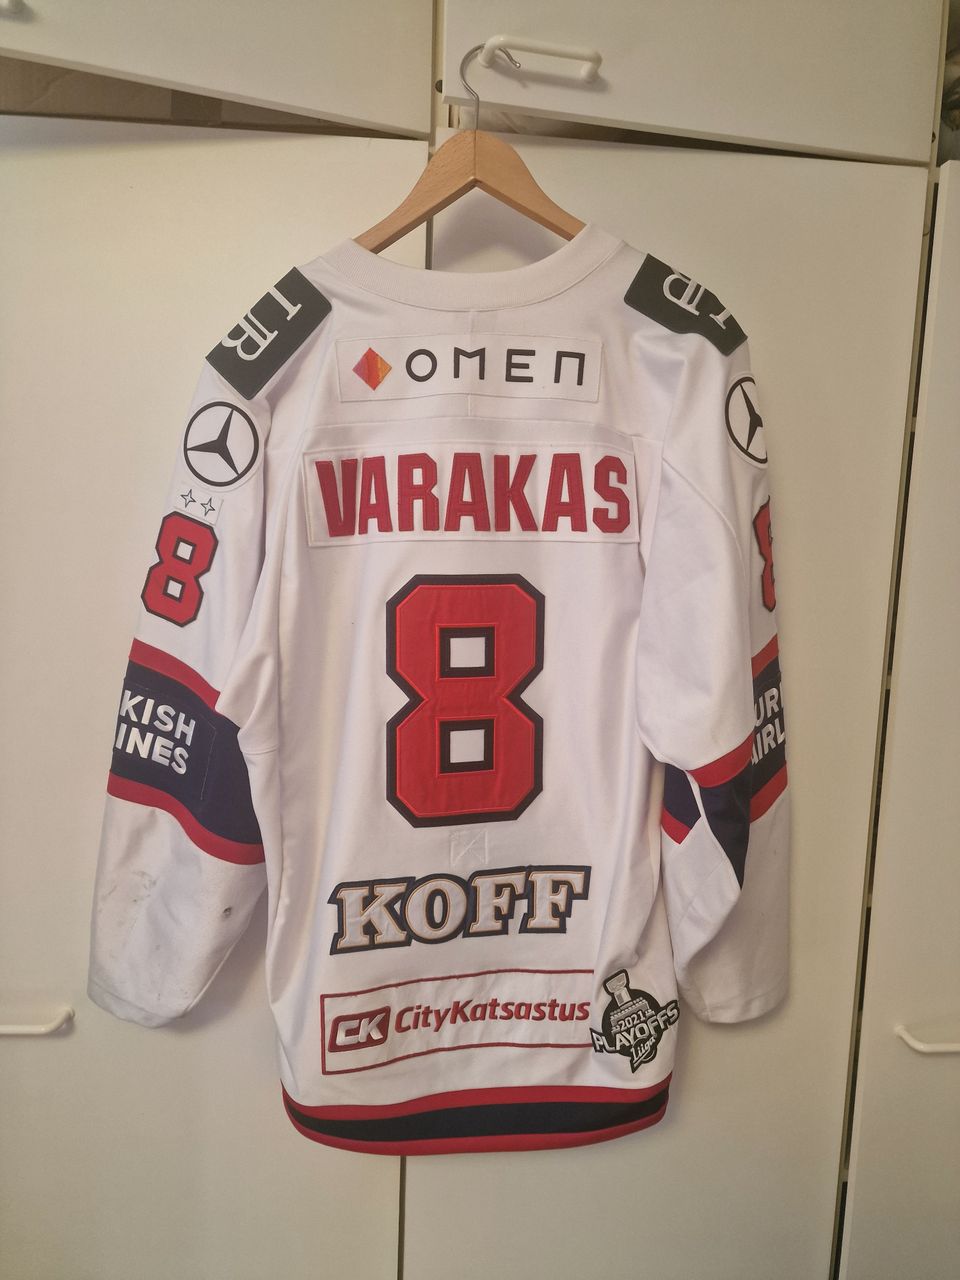 Hifk game worn Ville Varakas